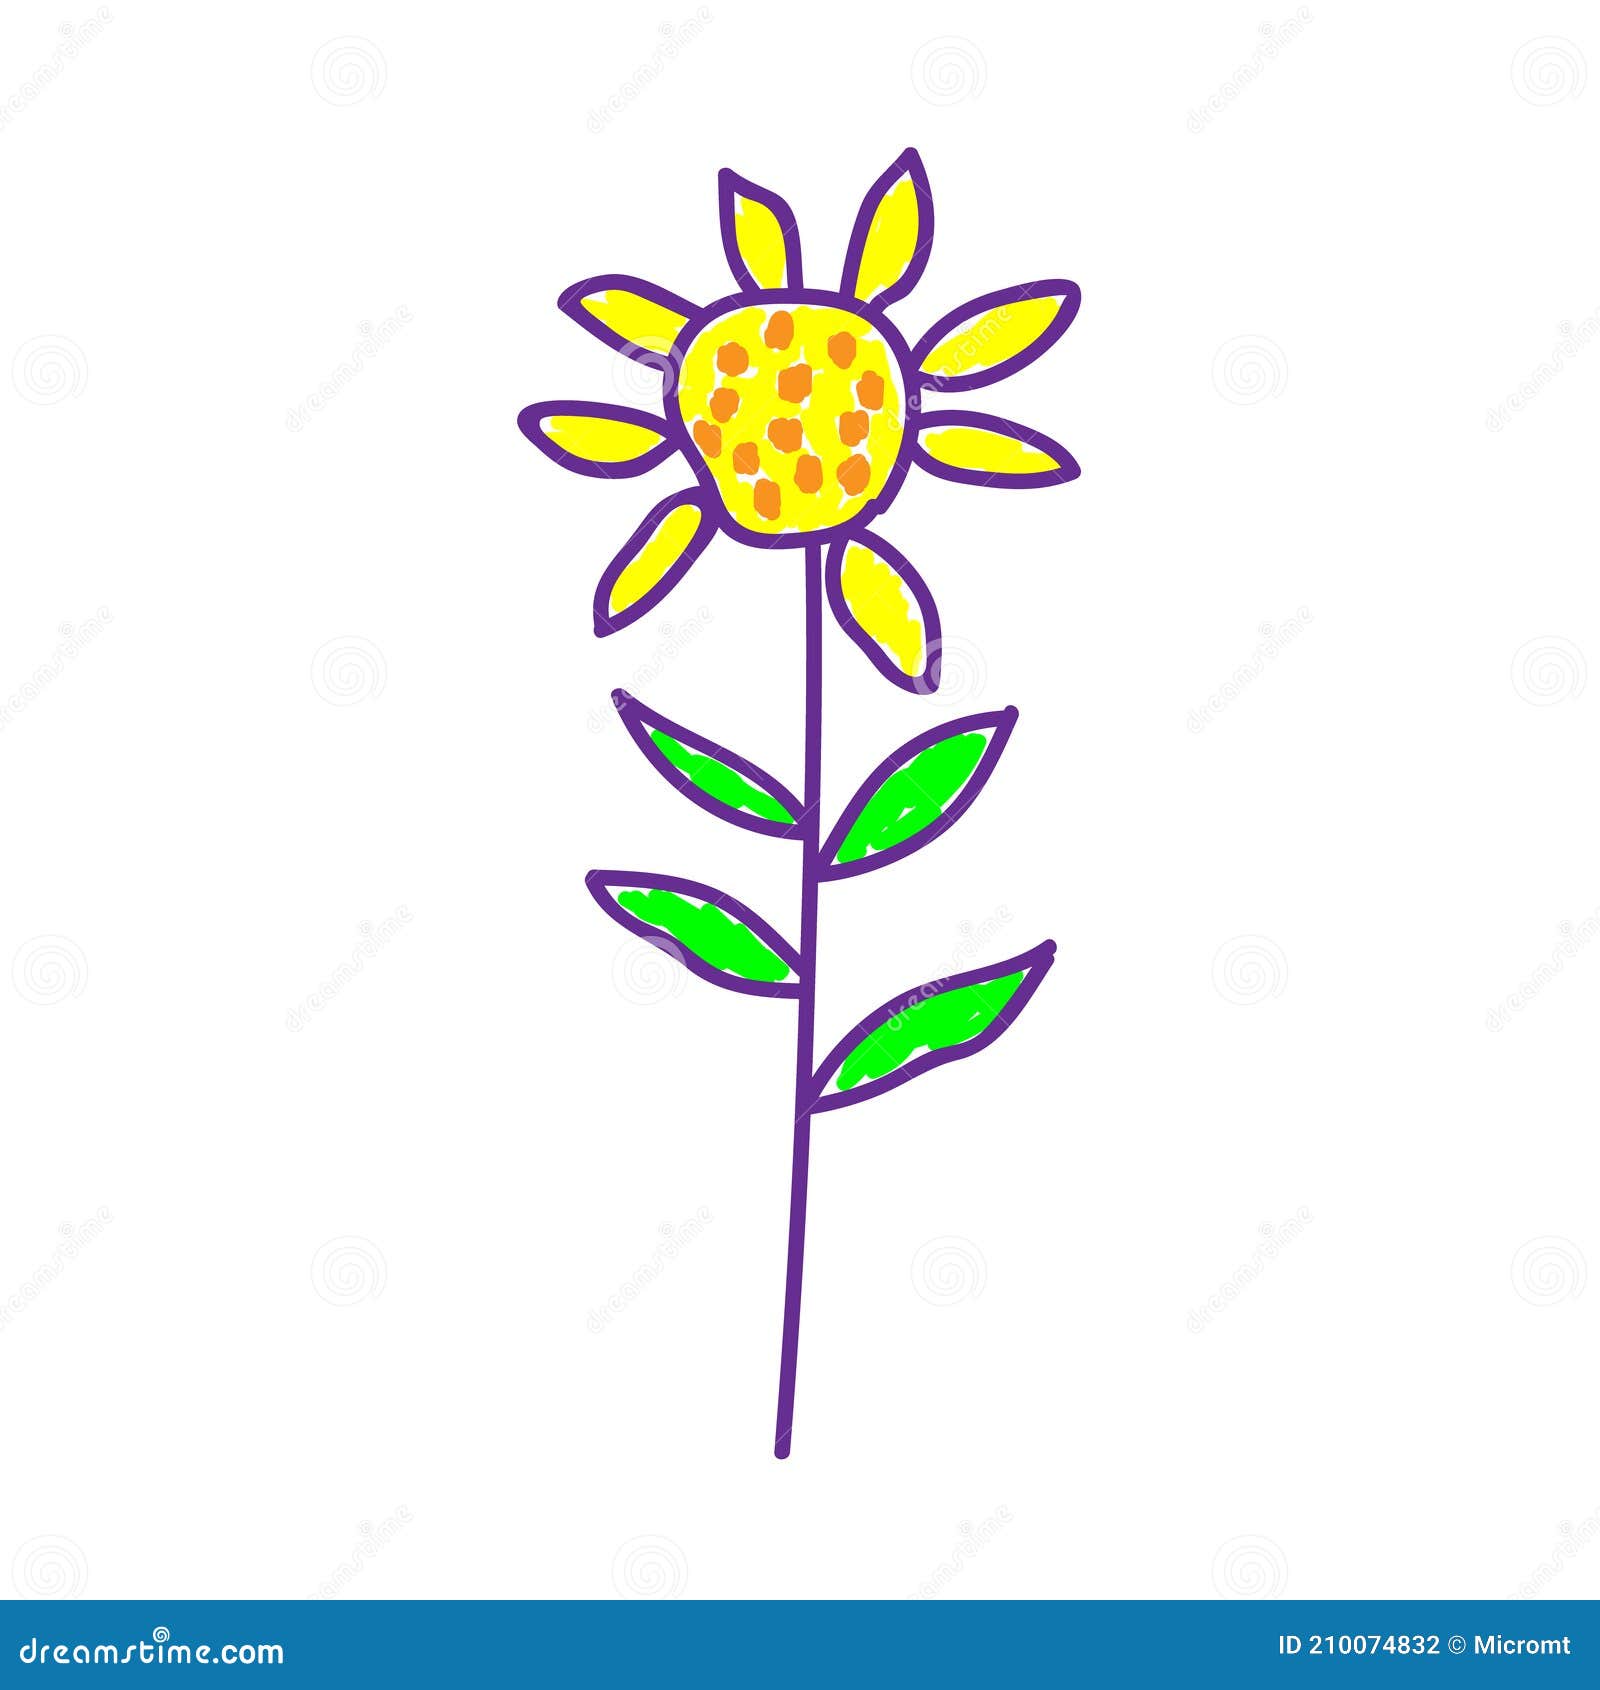 Desenho de Flor simples pintado e colorido por Anacfr o dia 16 de Julho do  2015